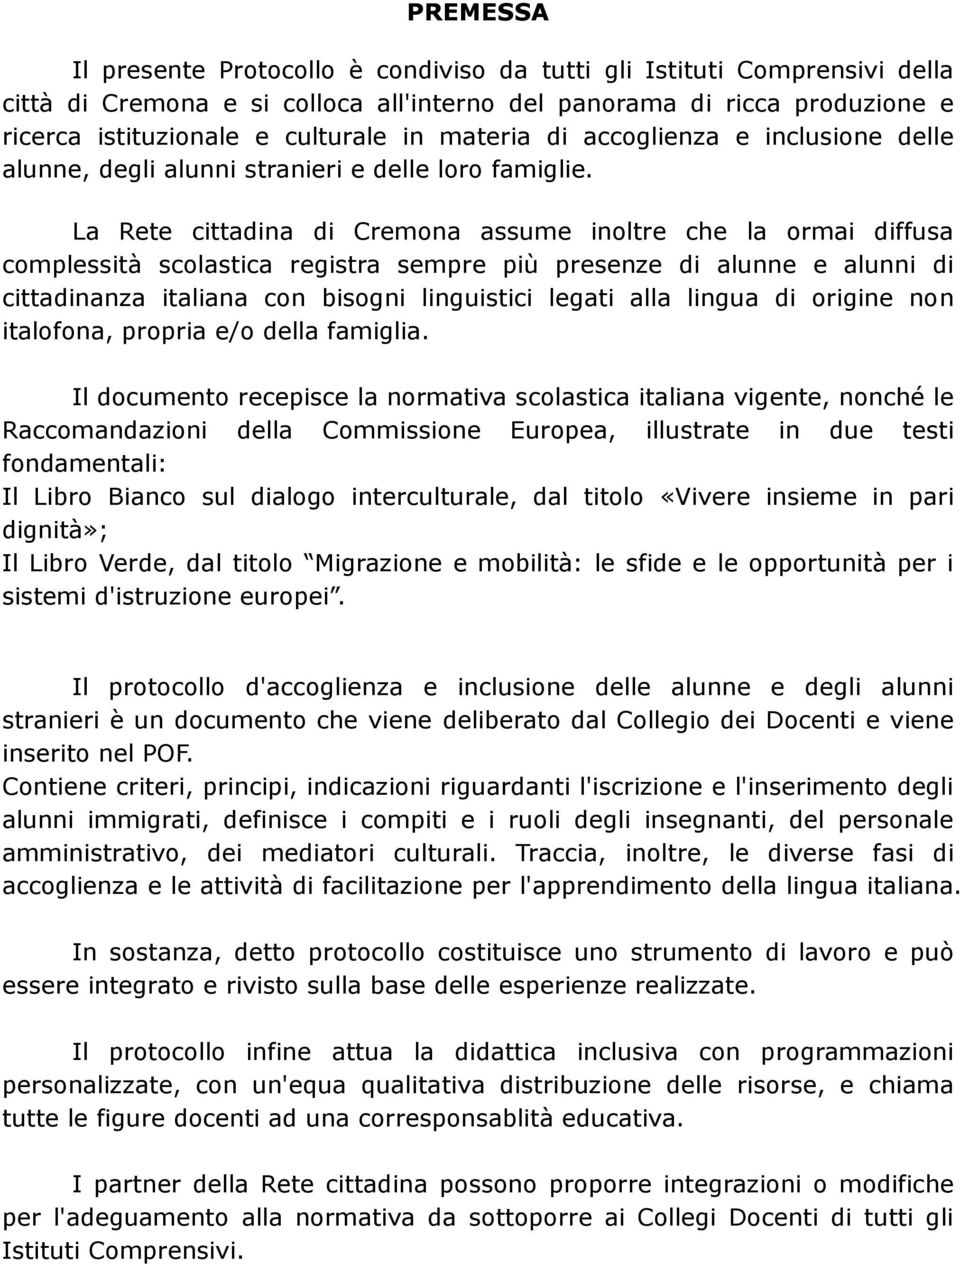 La Rete cittadina di Cremona assume inoltre che la ormai diffusa complessità scolastica registra sempre più presenze di alunne e alunni di cittadinanza italiana con bisogni linguistici legati alla